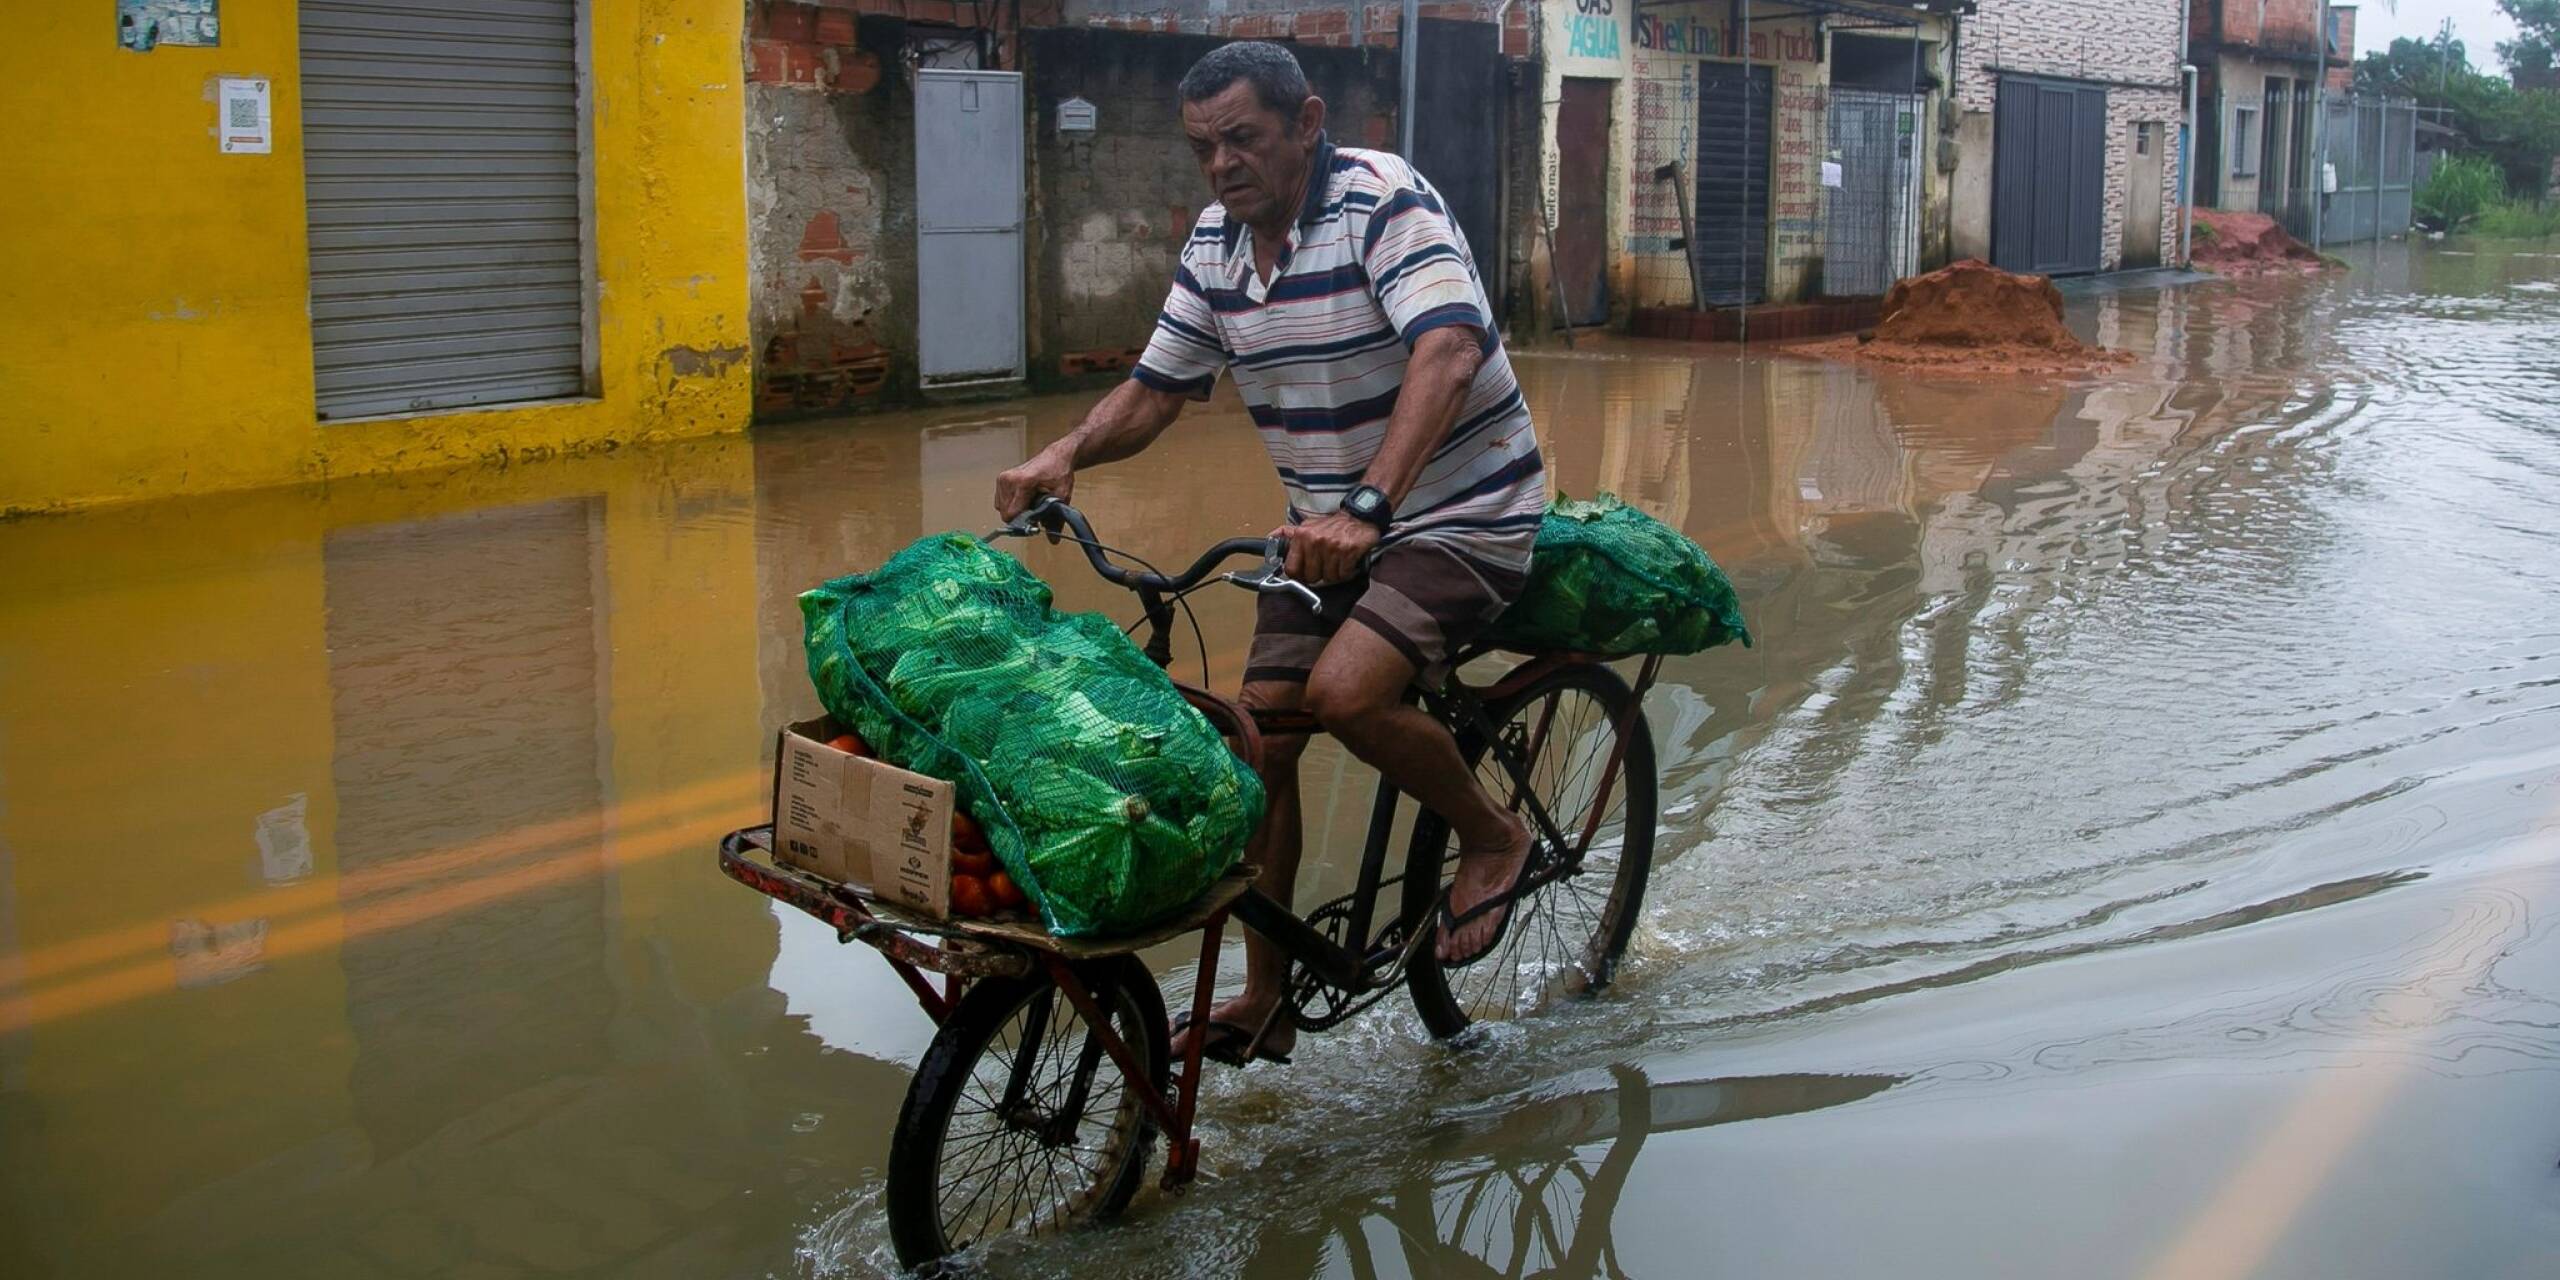 Mit Kraft voran: Durch überflutete Straßen kämpft sich ein Mann auf seinem Fahrrad. Seit der Nacht zu Samstag verwüsteten schwere Unwetter und starke Regenfälle den Südosten Brasiliens, mindestens 23 Personen kamen ums Leben.